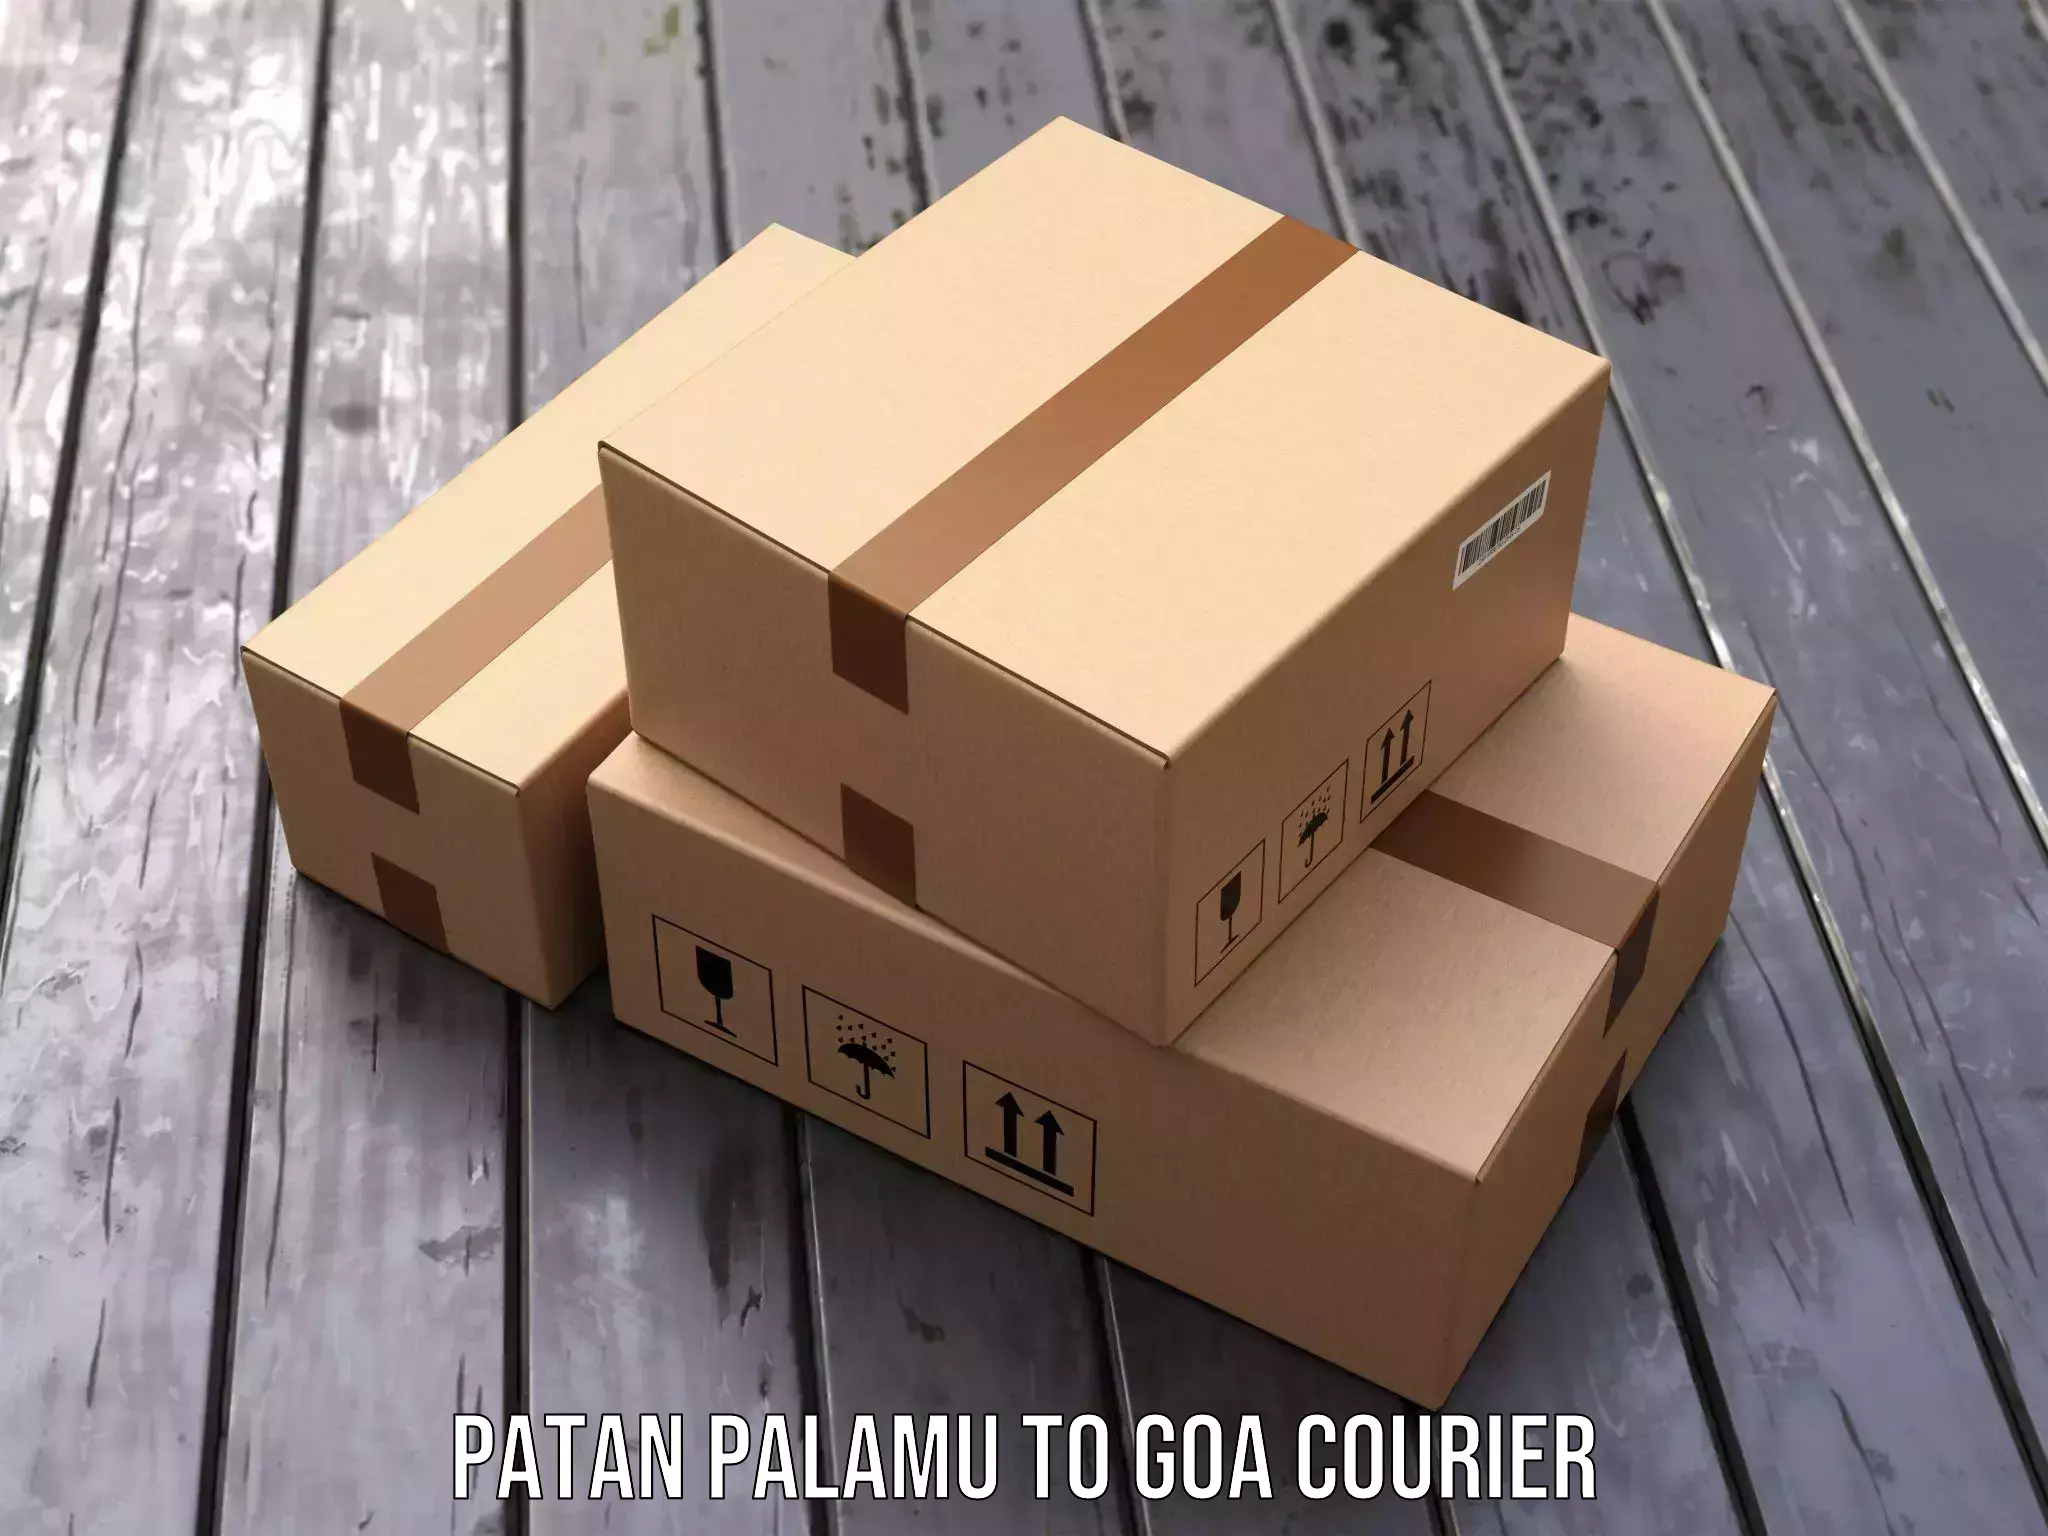 Express logistics providers Patan Palamu to IIT Goa